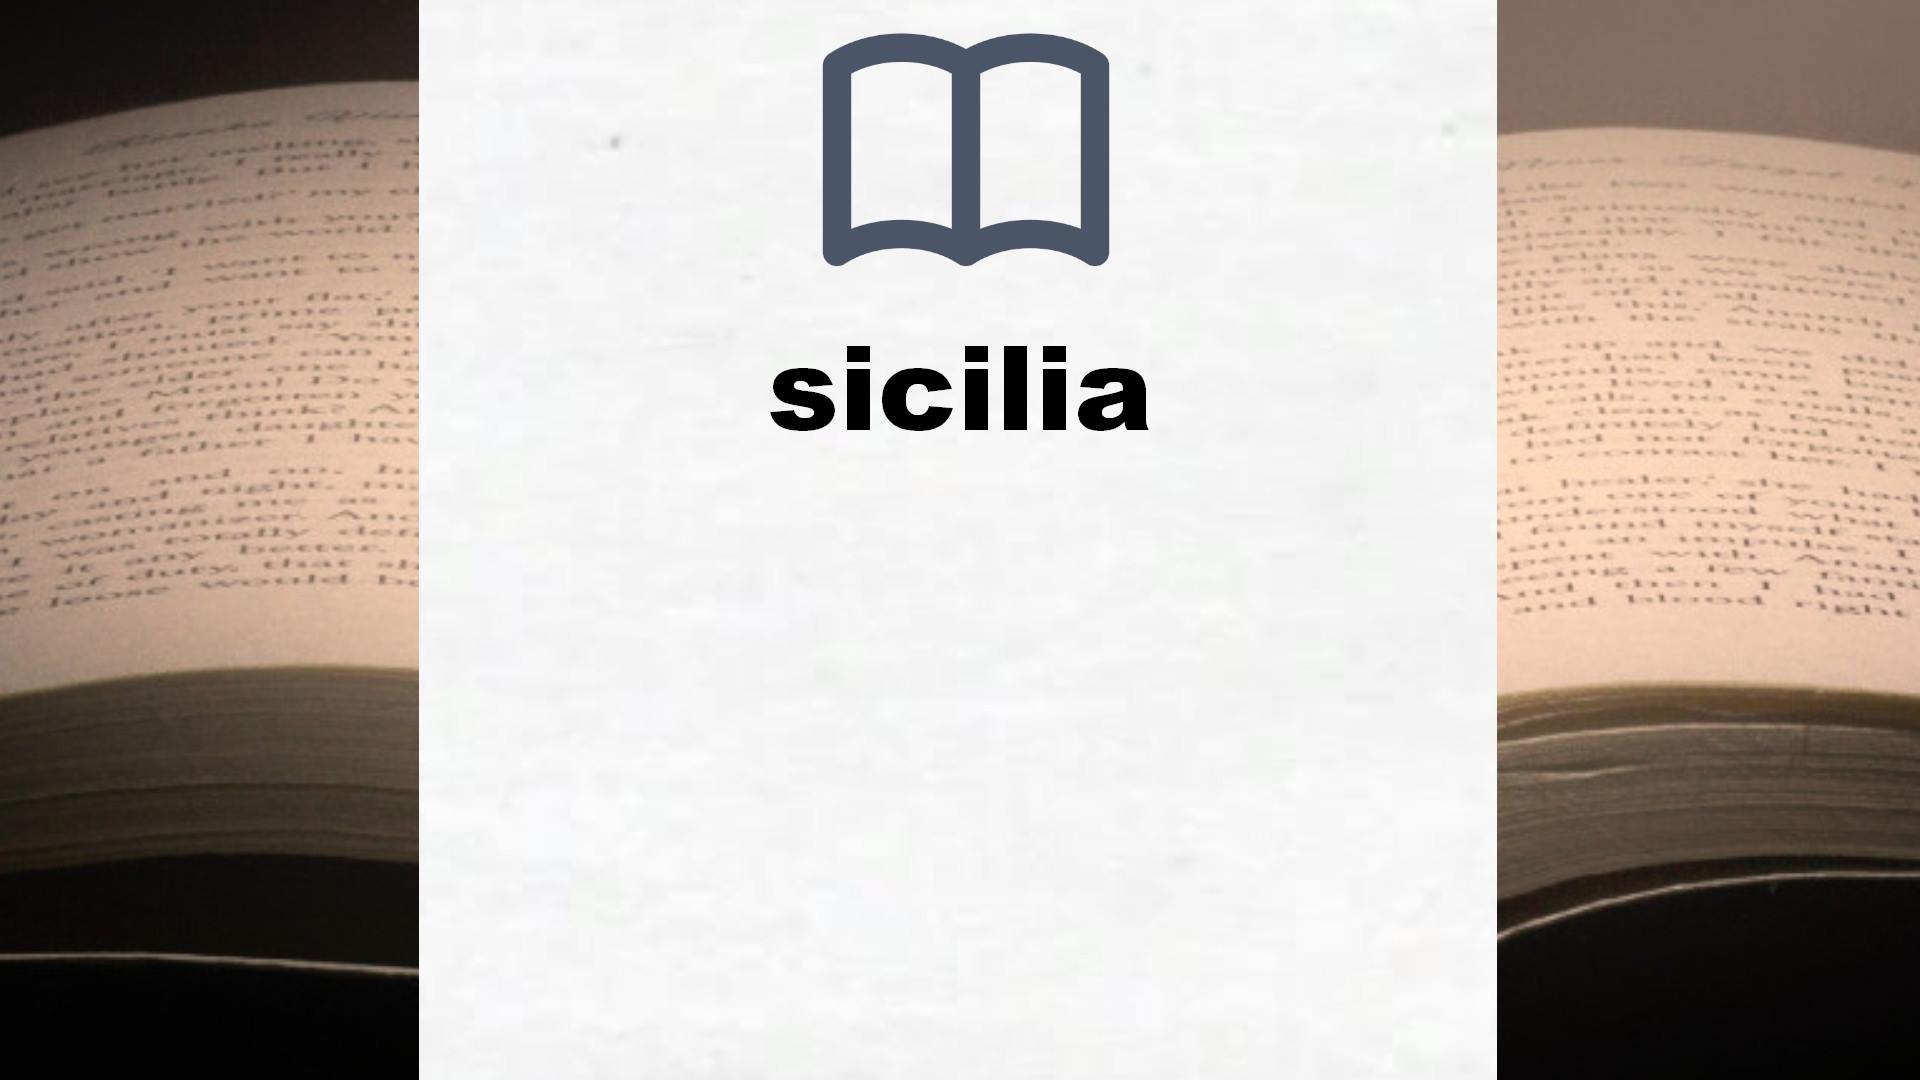 Libros sobre sicilia